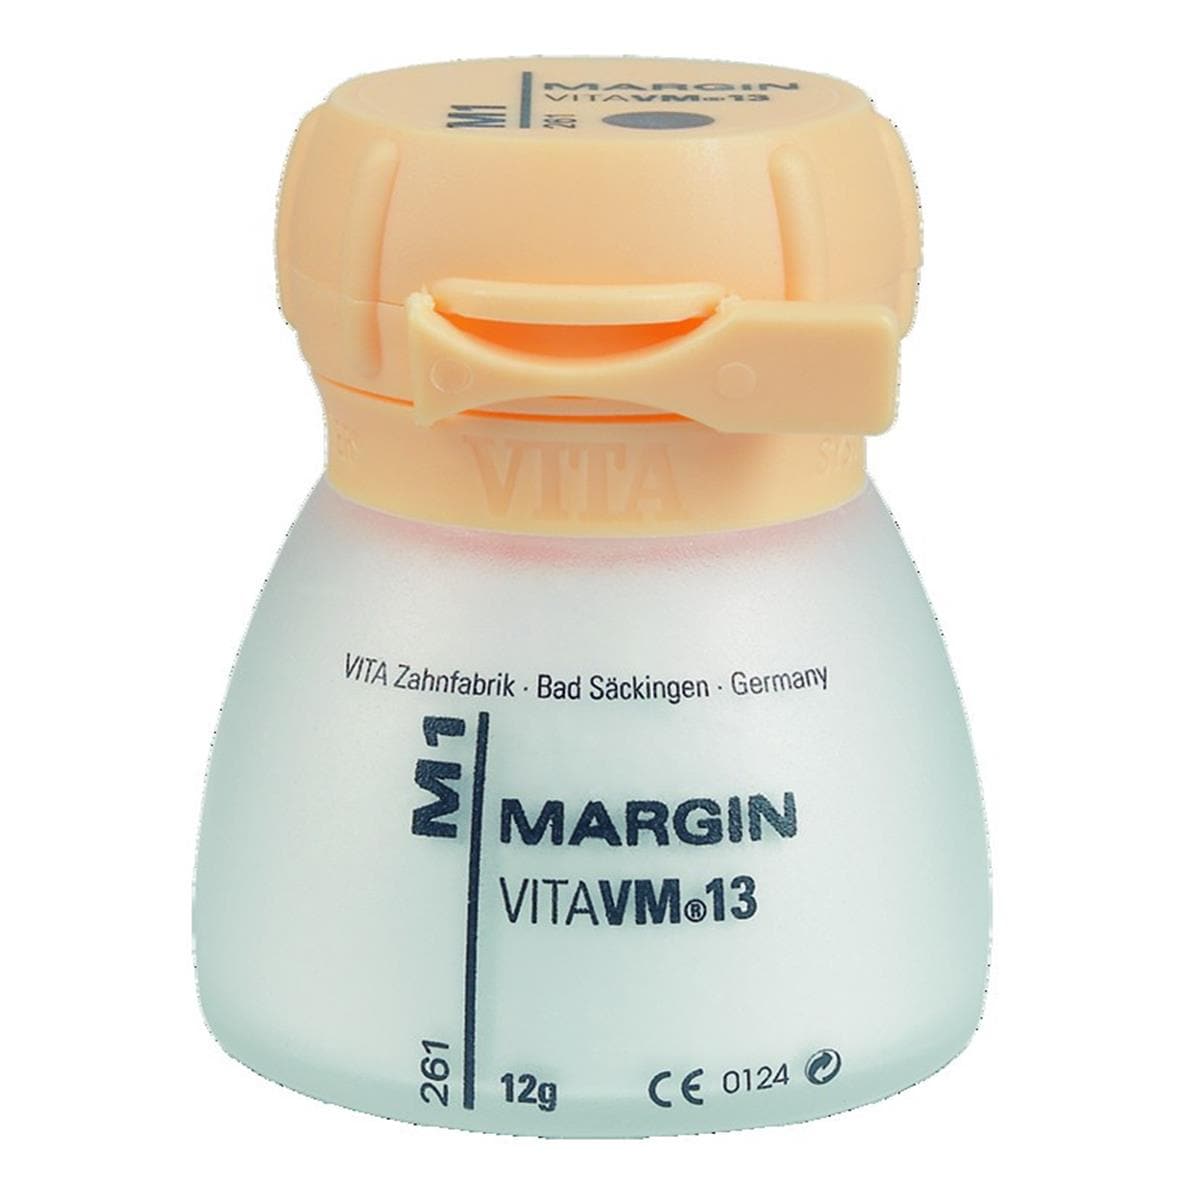 VM13 VITA - Margin - M7 - Le pot de 12 g